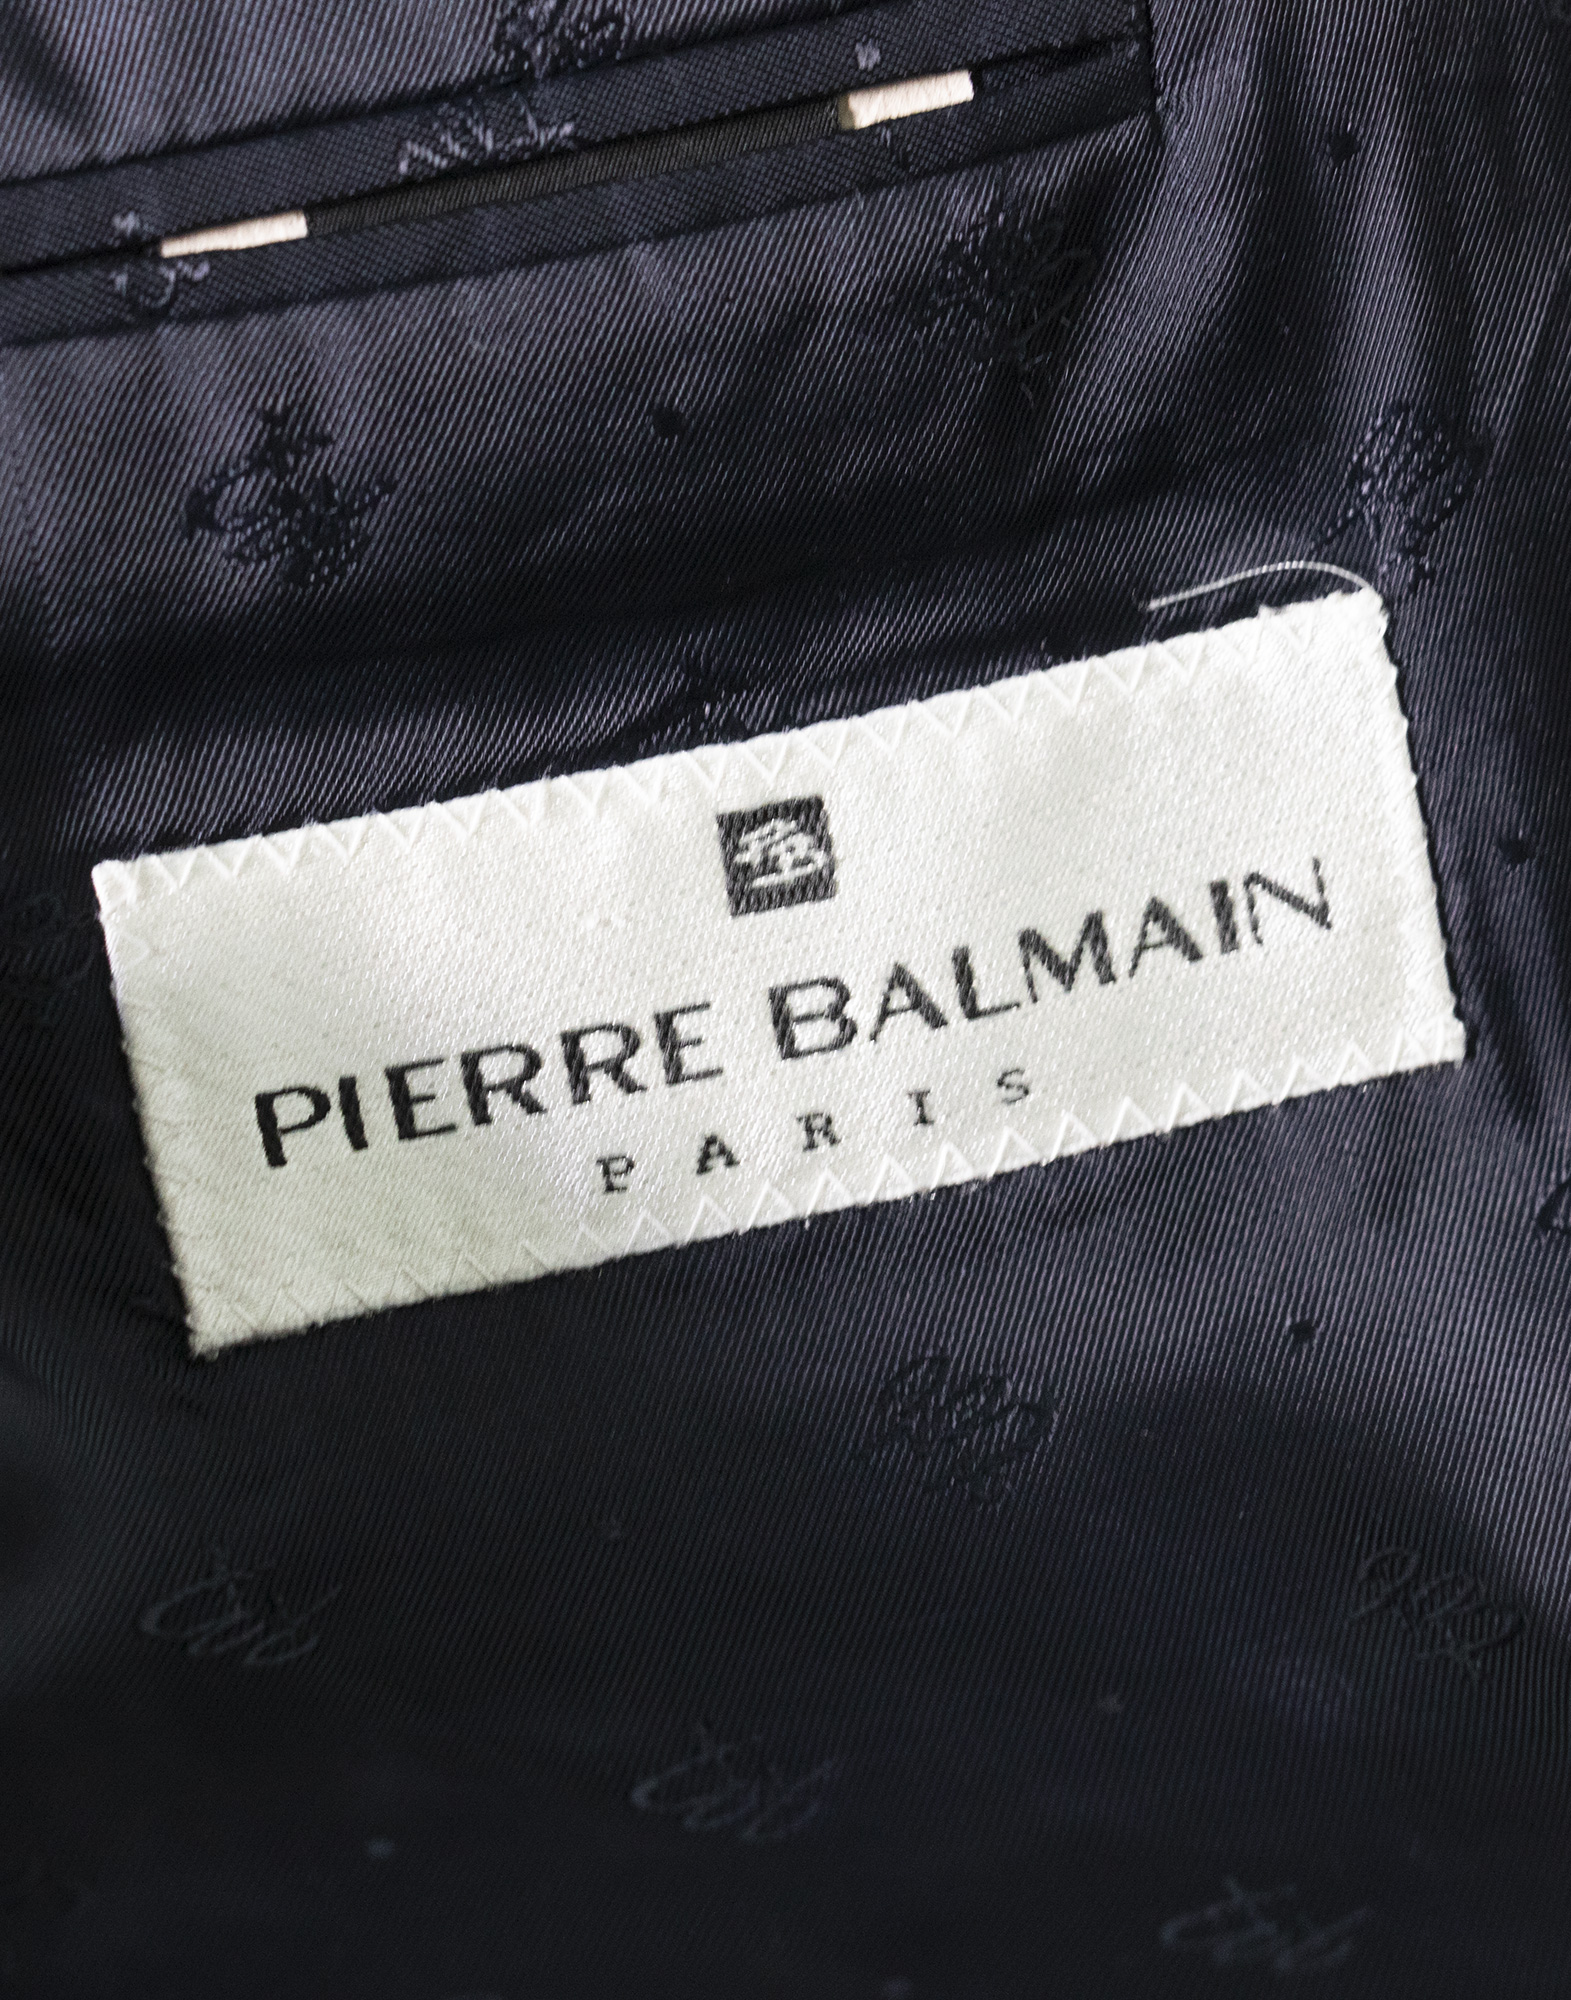 Pierre Balmain - Double-breasted blazer in virgin wool